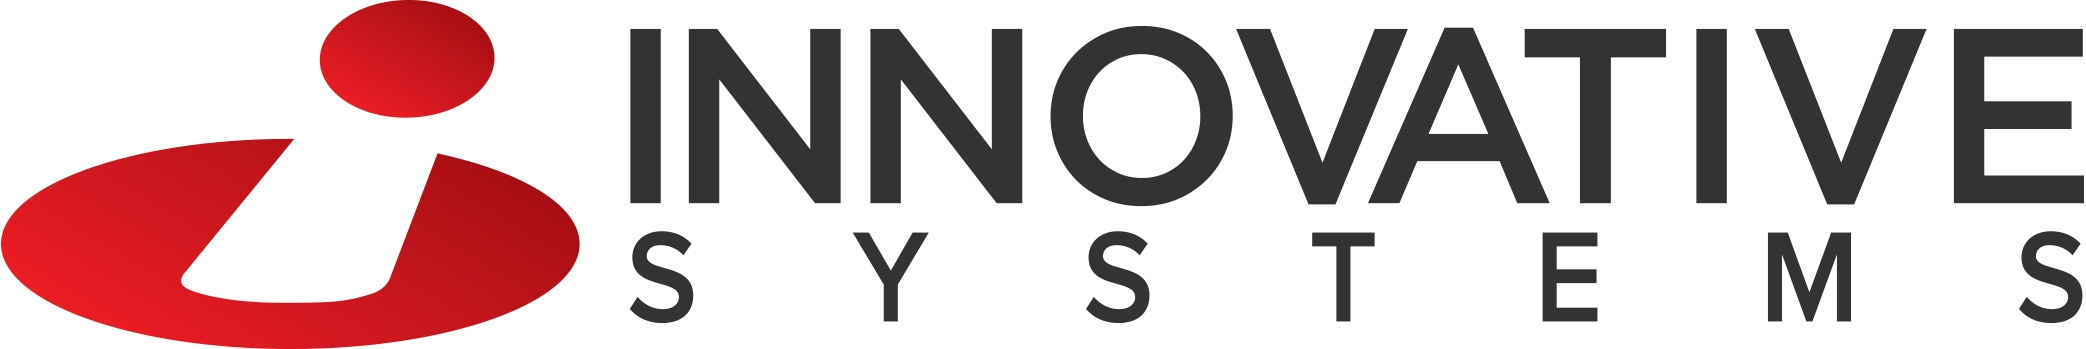 Innovative Systems Inc Company Logo